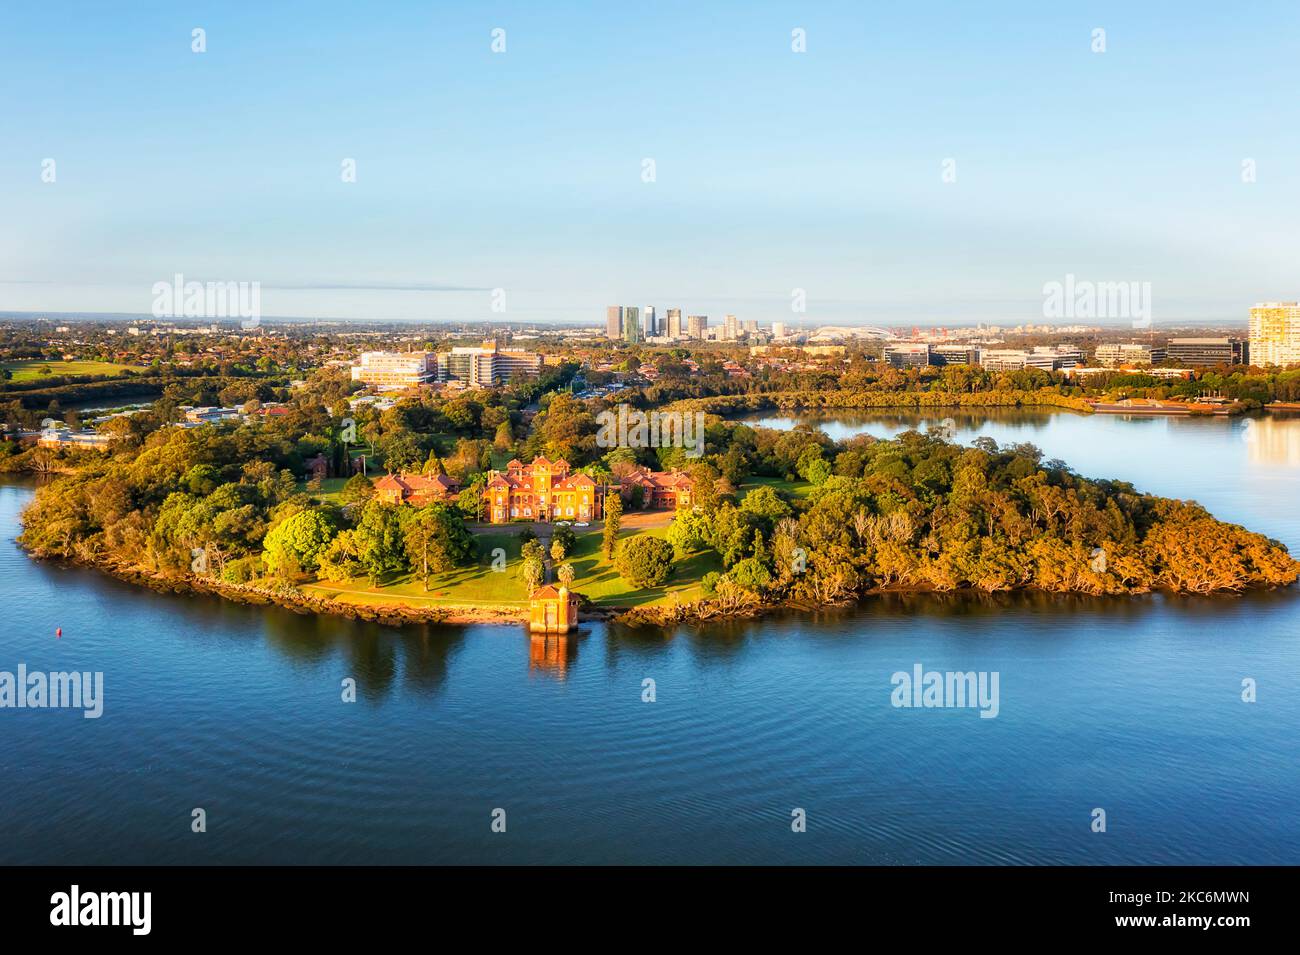 Rivendell Schule am Ufer des Parramatta Flusses im Westen von Sydney in Australien - Luftbild der Stadt. Stockfoto